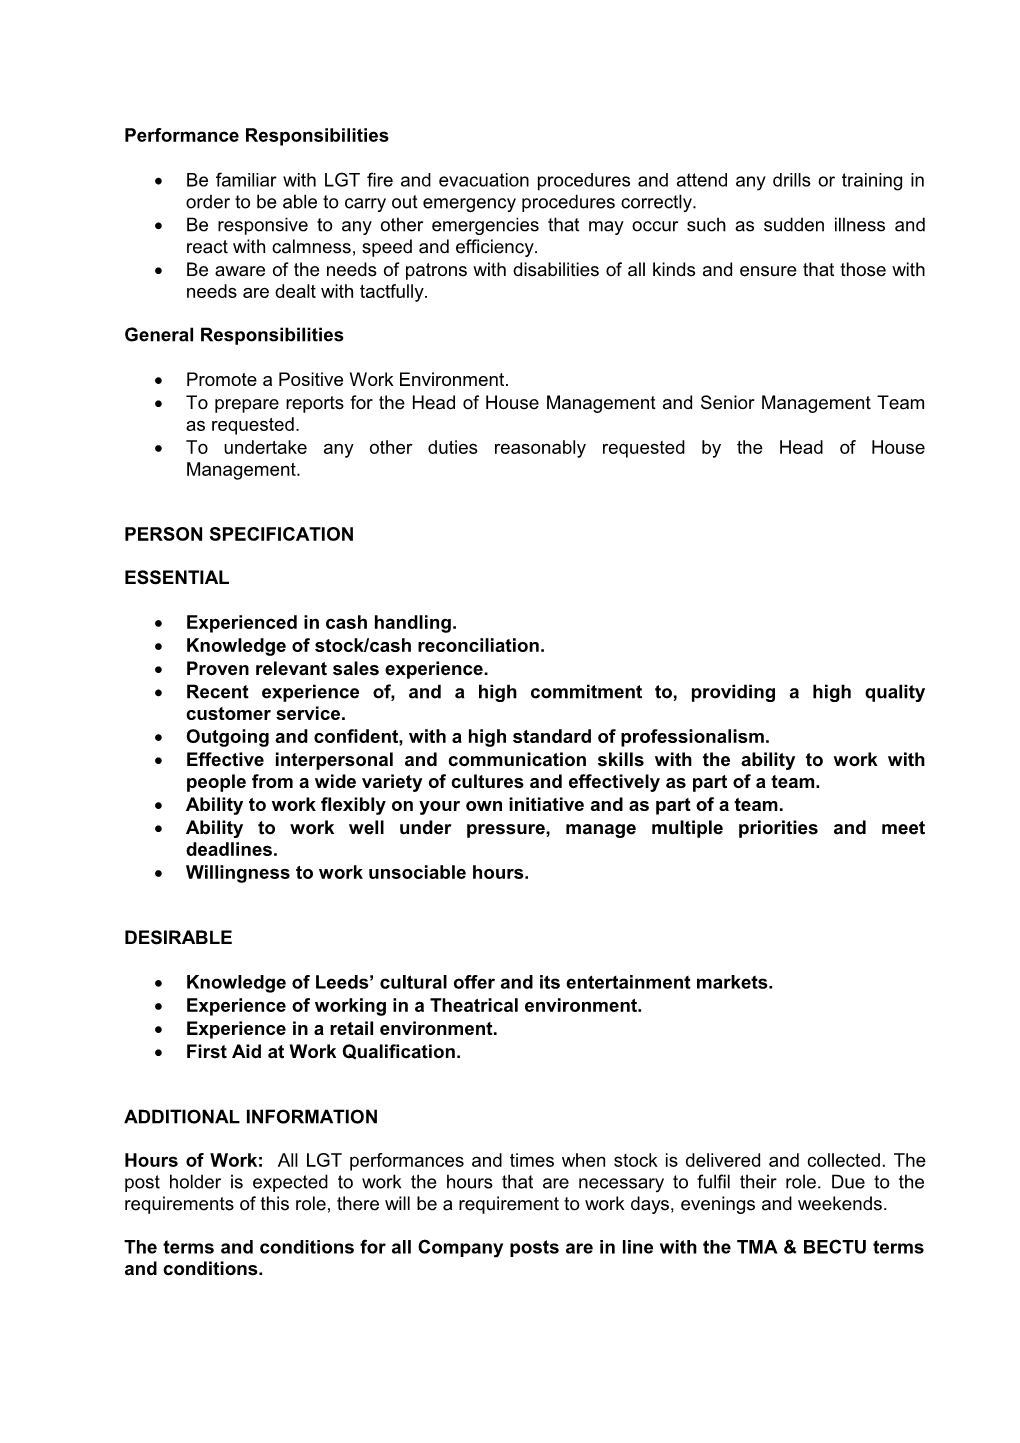 Leeds Grand Theatre and Opera House Ltd Job Description